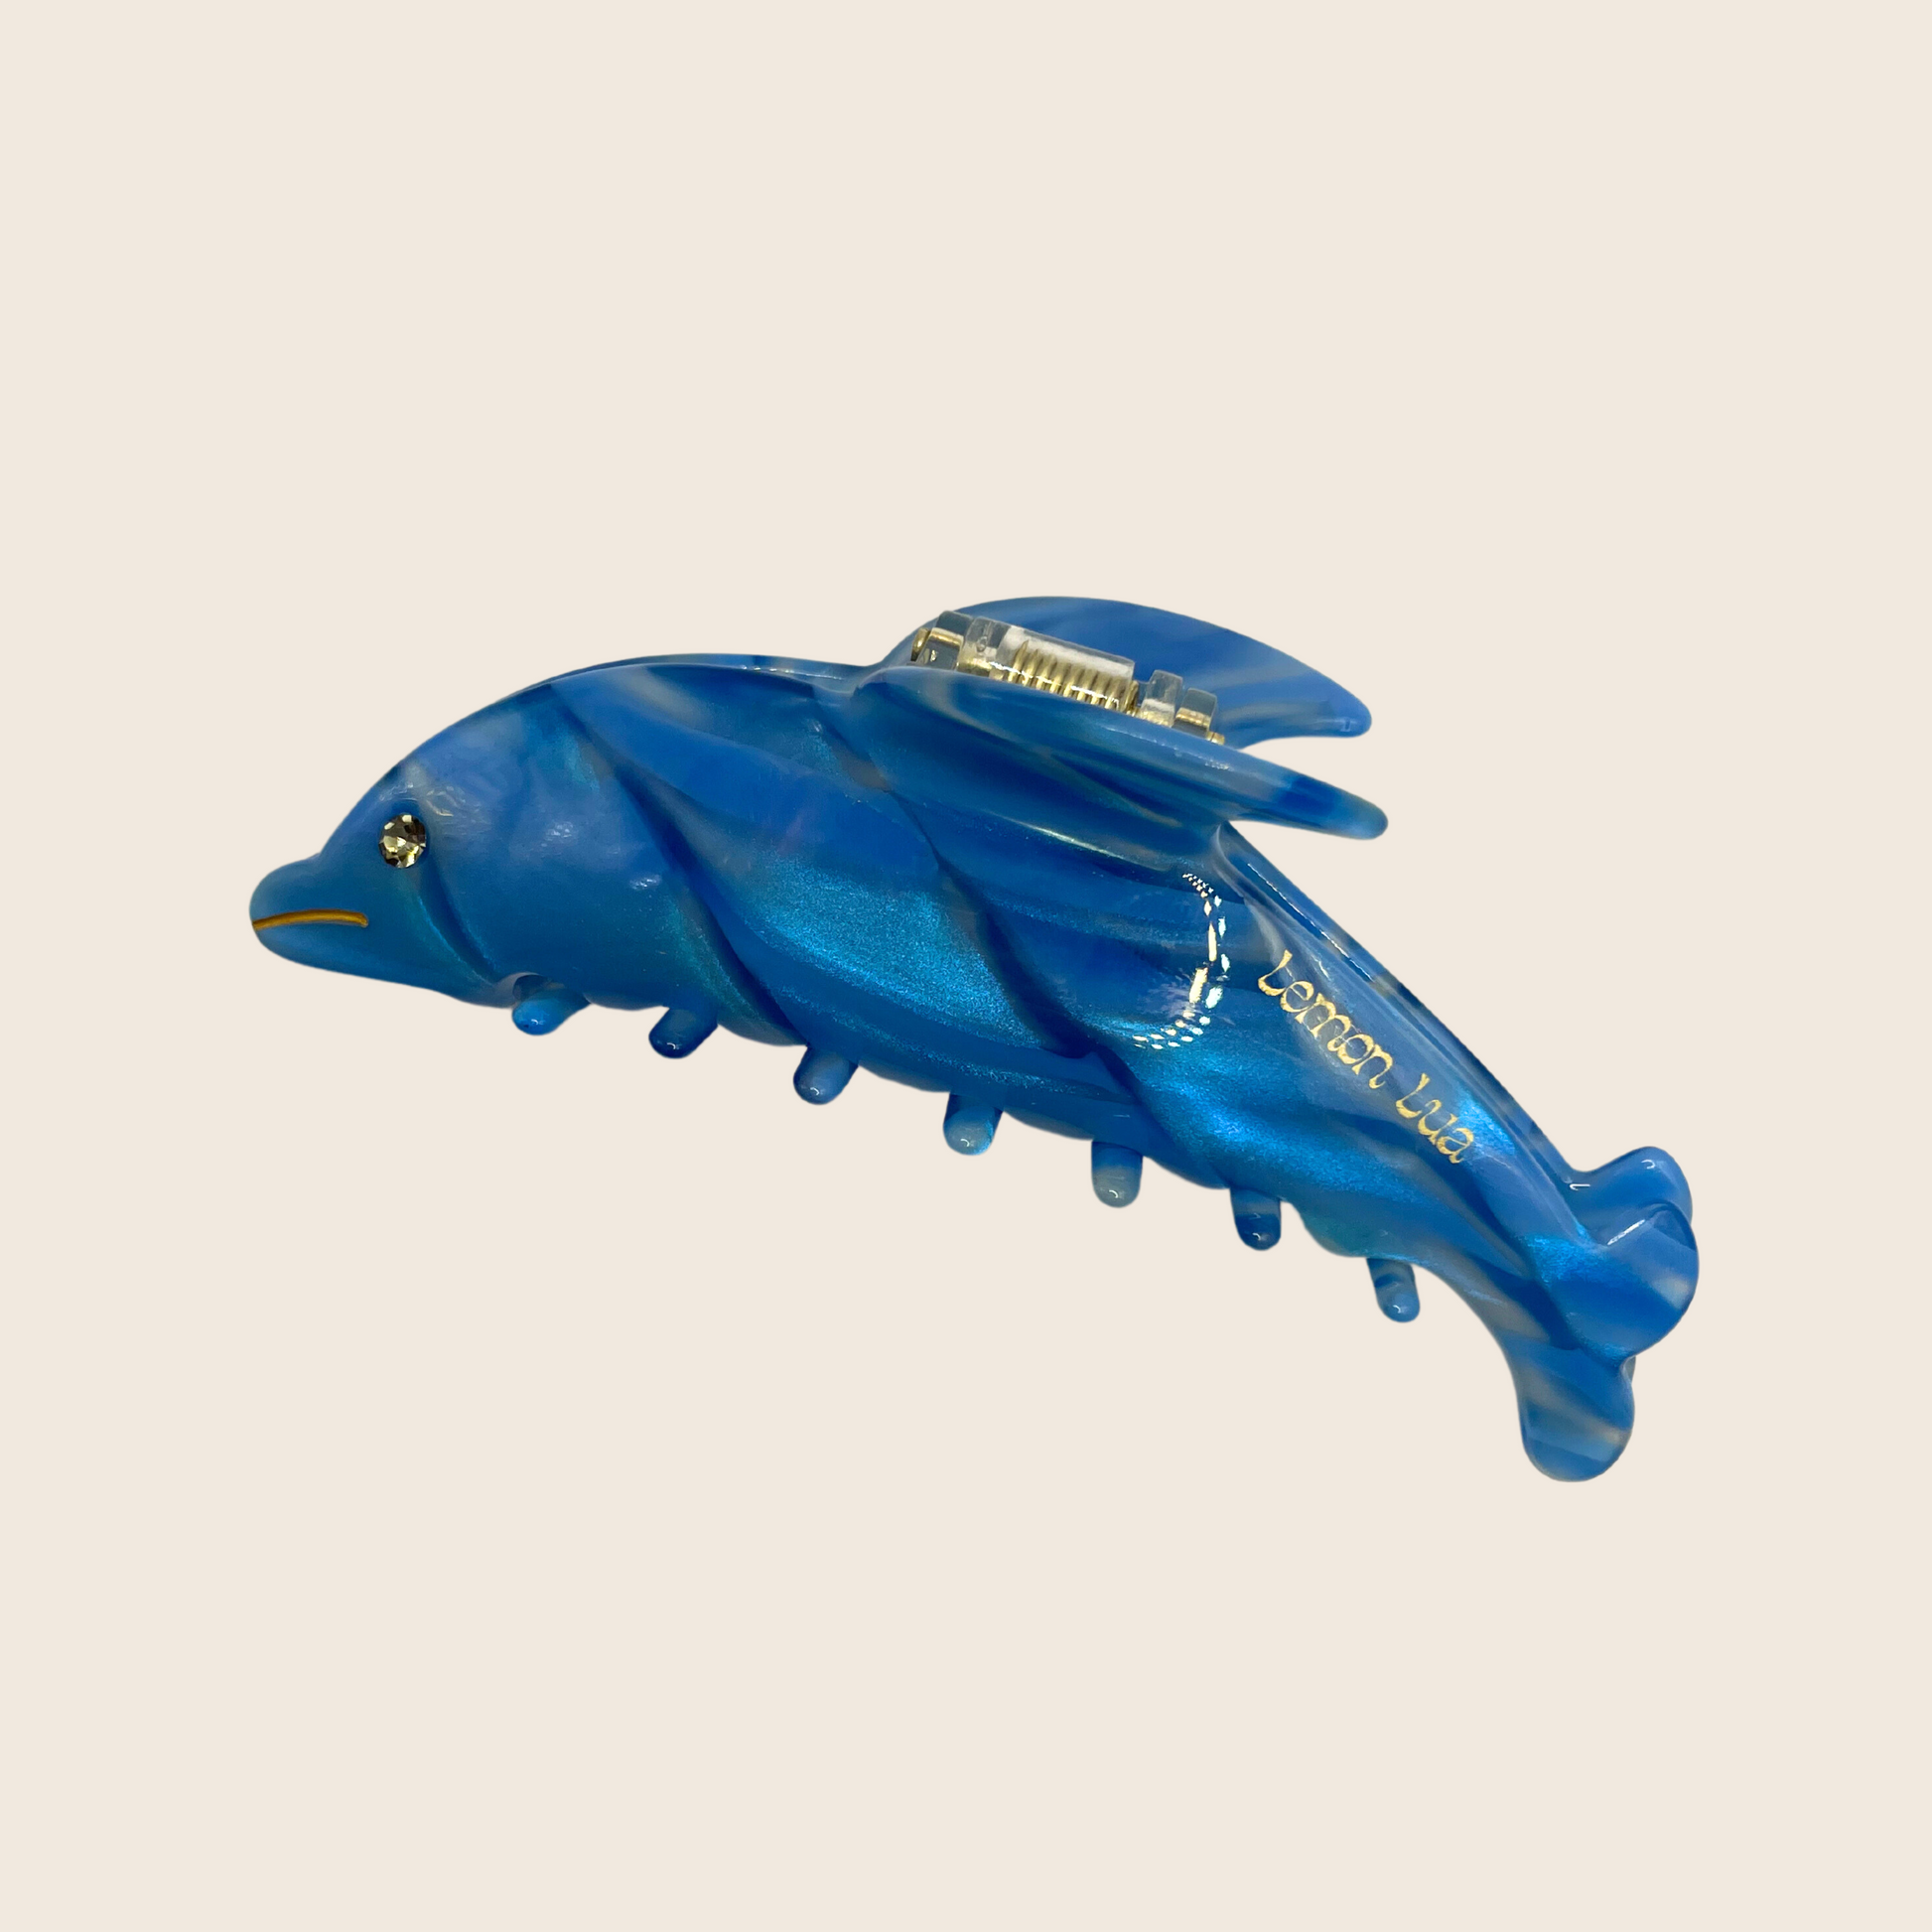 Dolphin Hairclip - Lemon Lua Dolphin Hairclip Lemon Lua Blue Lemon Lua Dolphin Hairclip Dolphin Hairclip